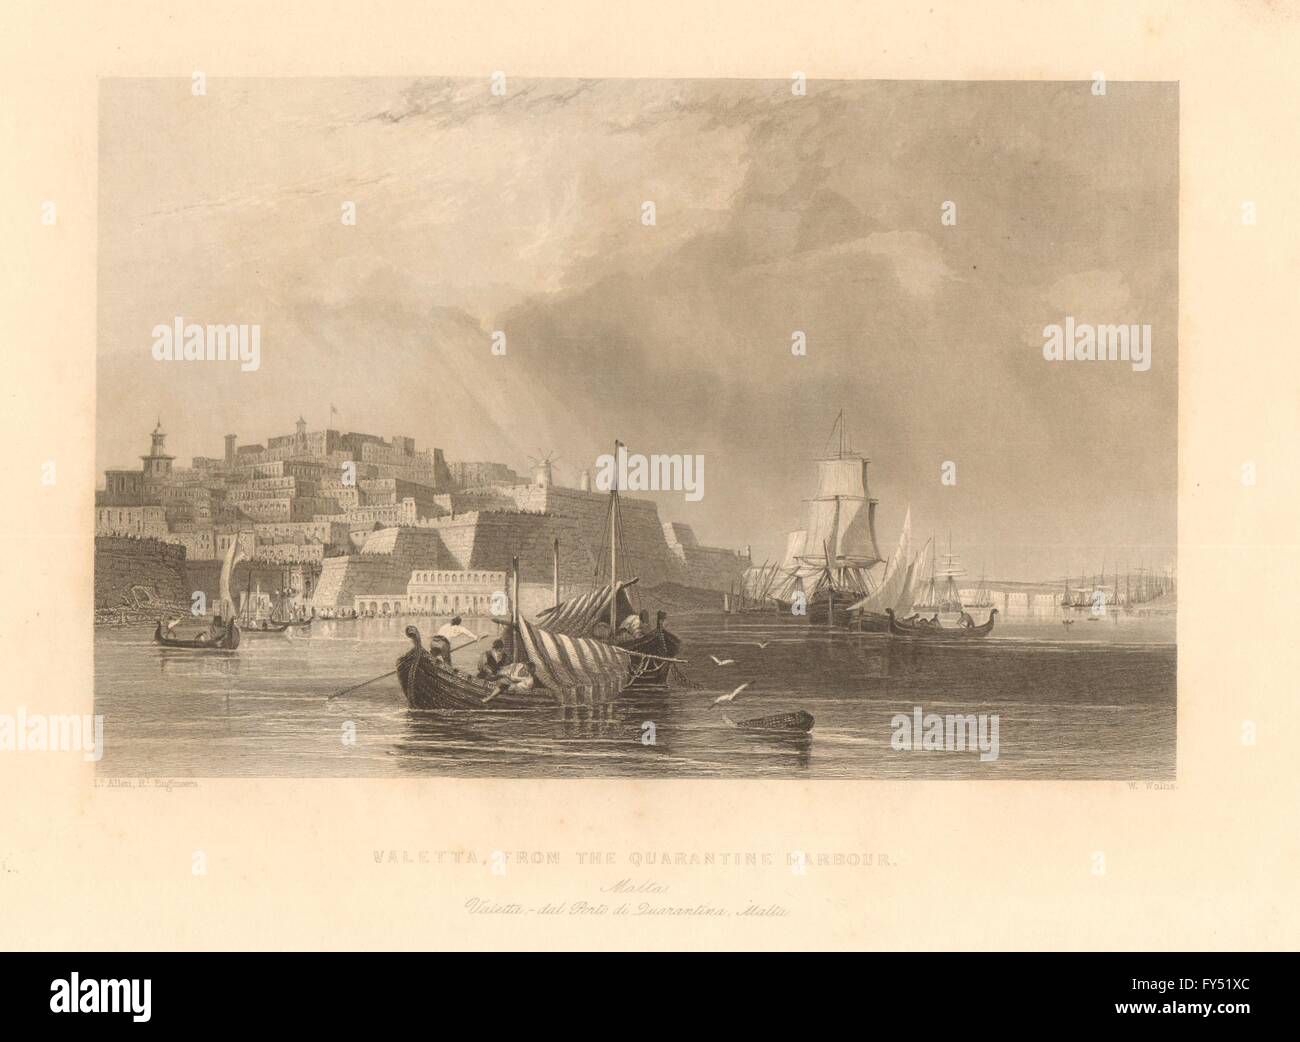 Vue de La Valette, le port de la quarantaine. Malte. TALLIS, old print 1849 Banque D'Images